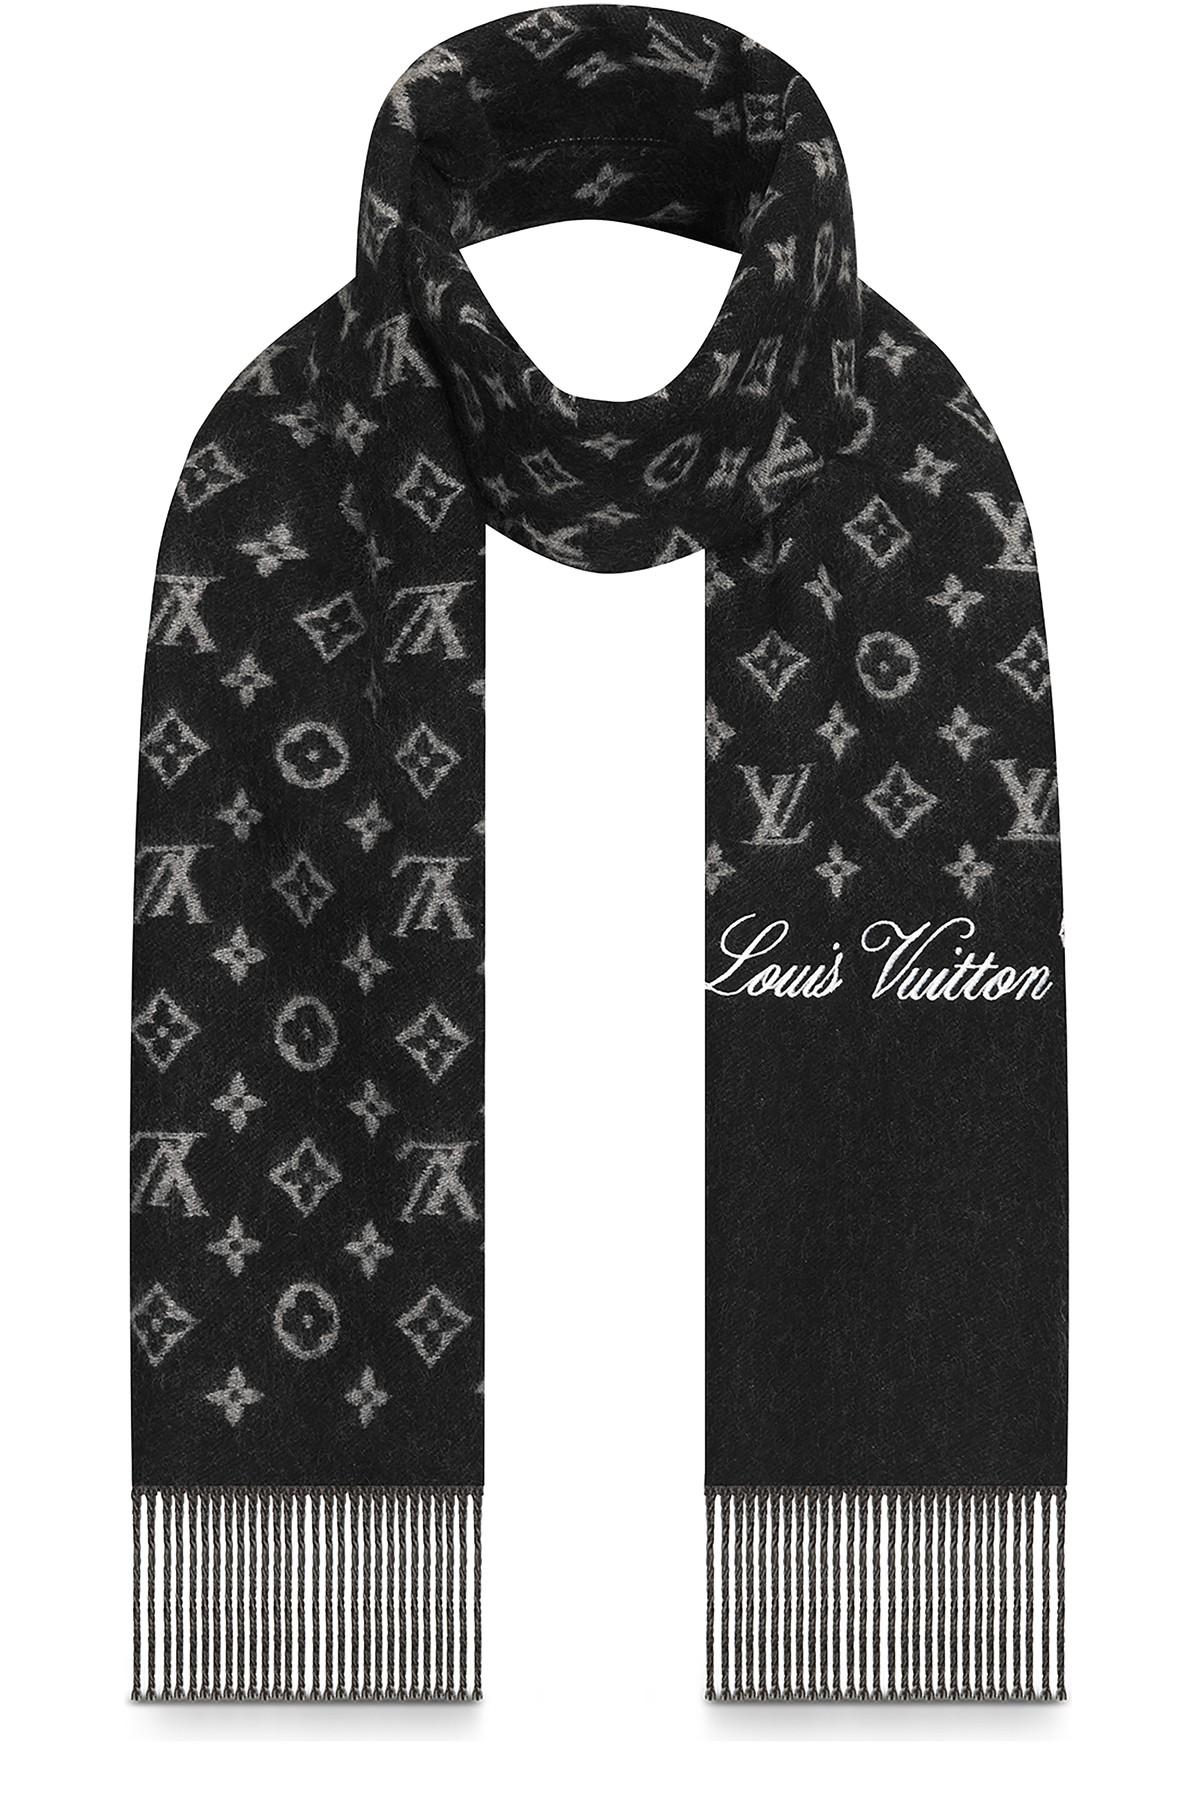 Louis Vuitton Schal schwarz grau